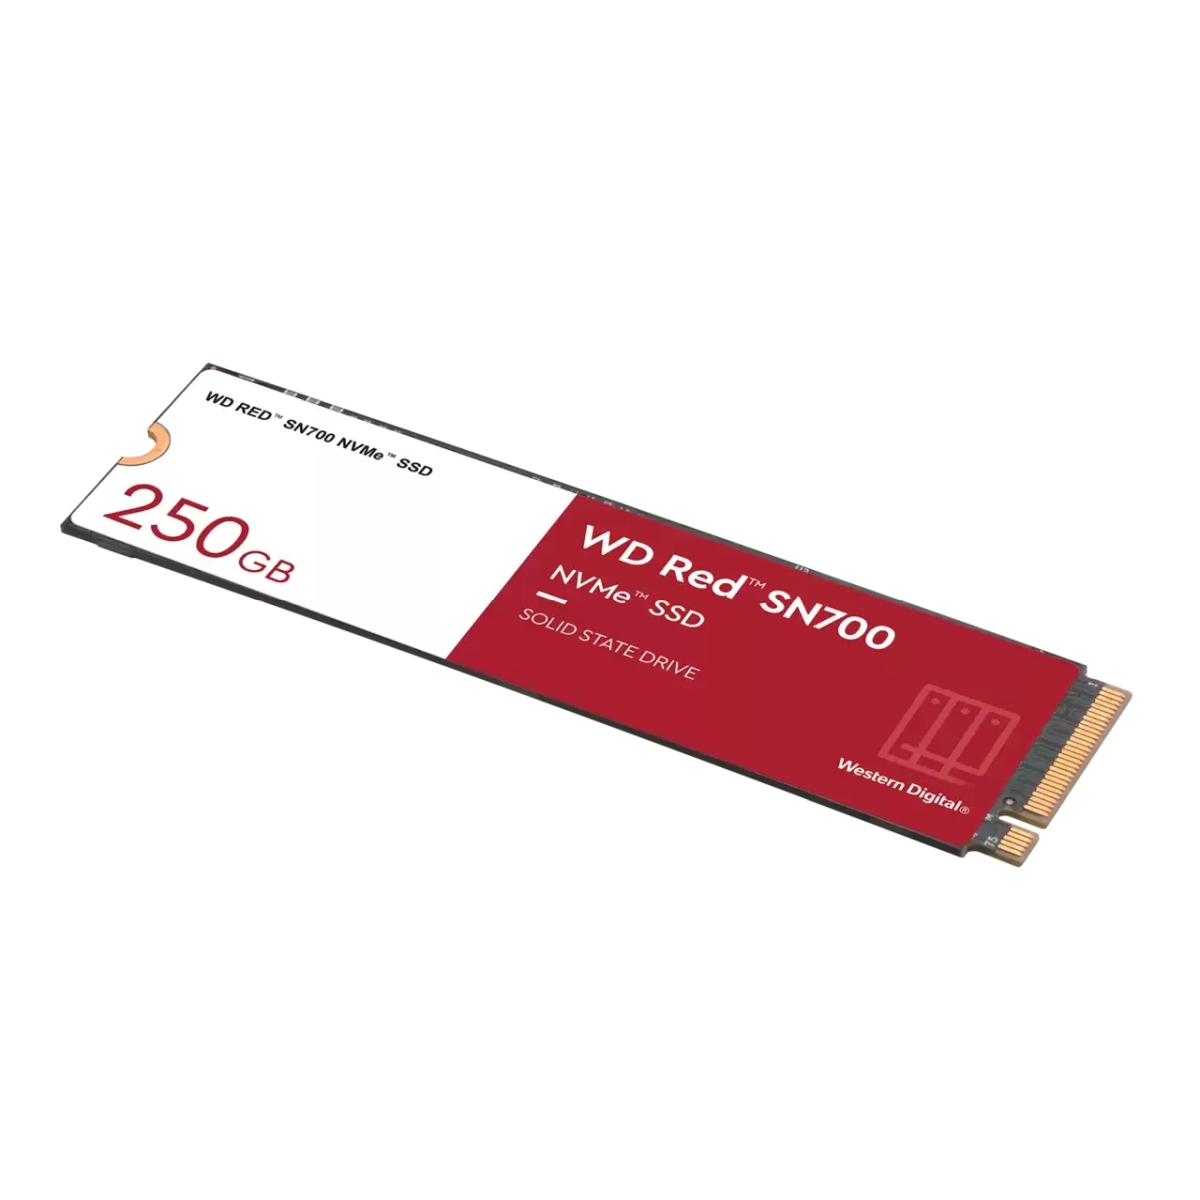 WESTERN DIGITAL 250 SN700, intern WD GB, Red SSD